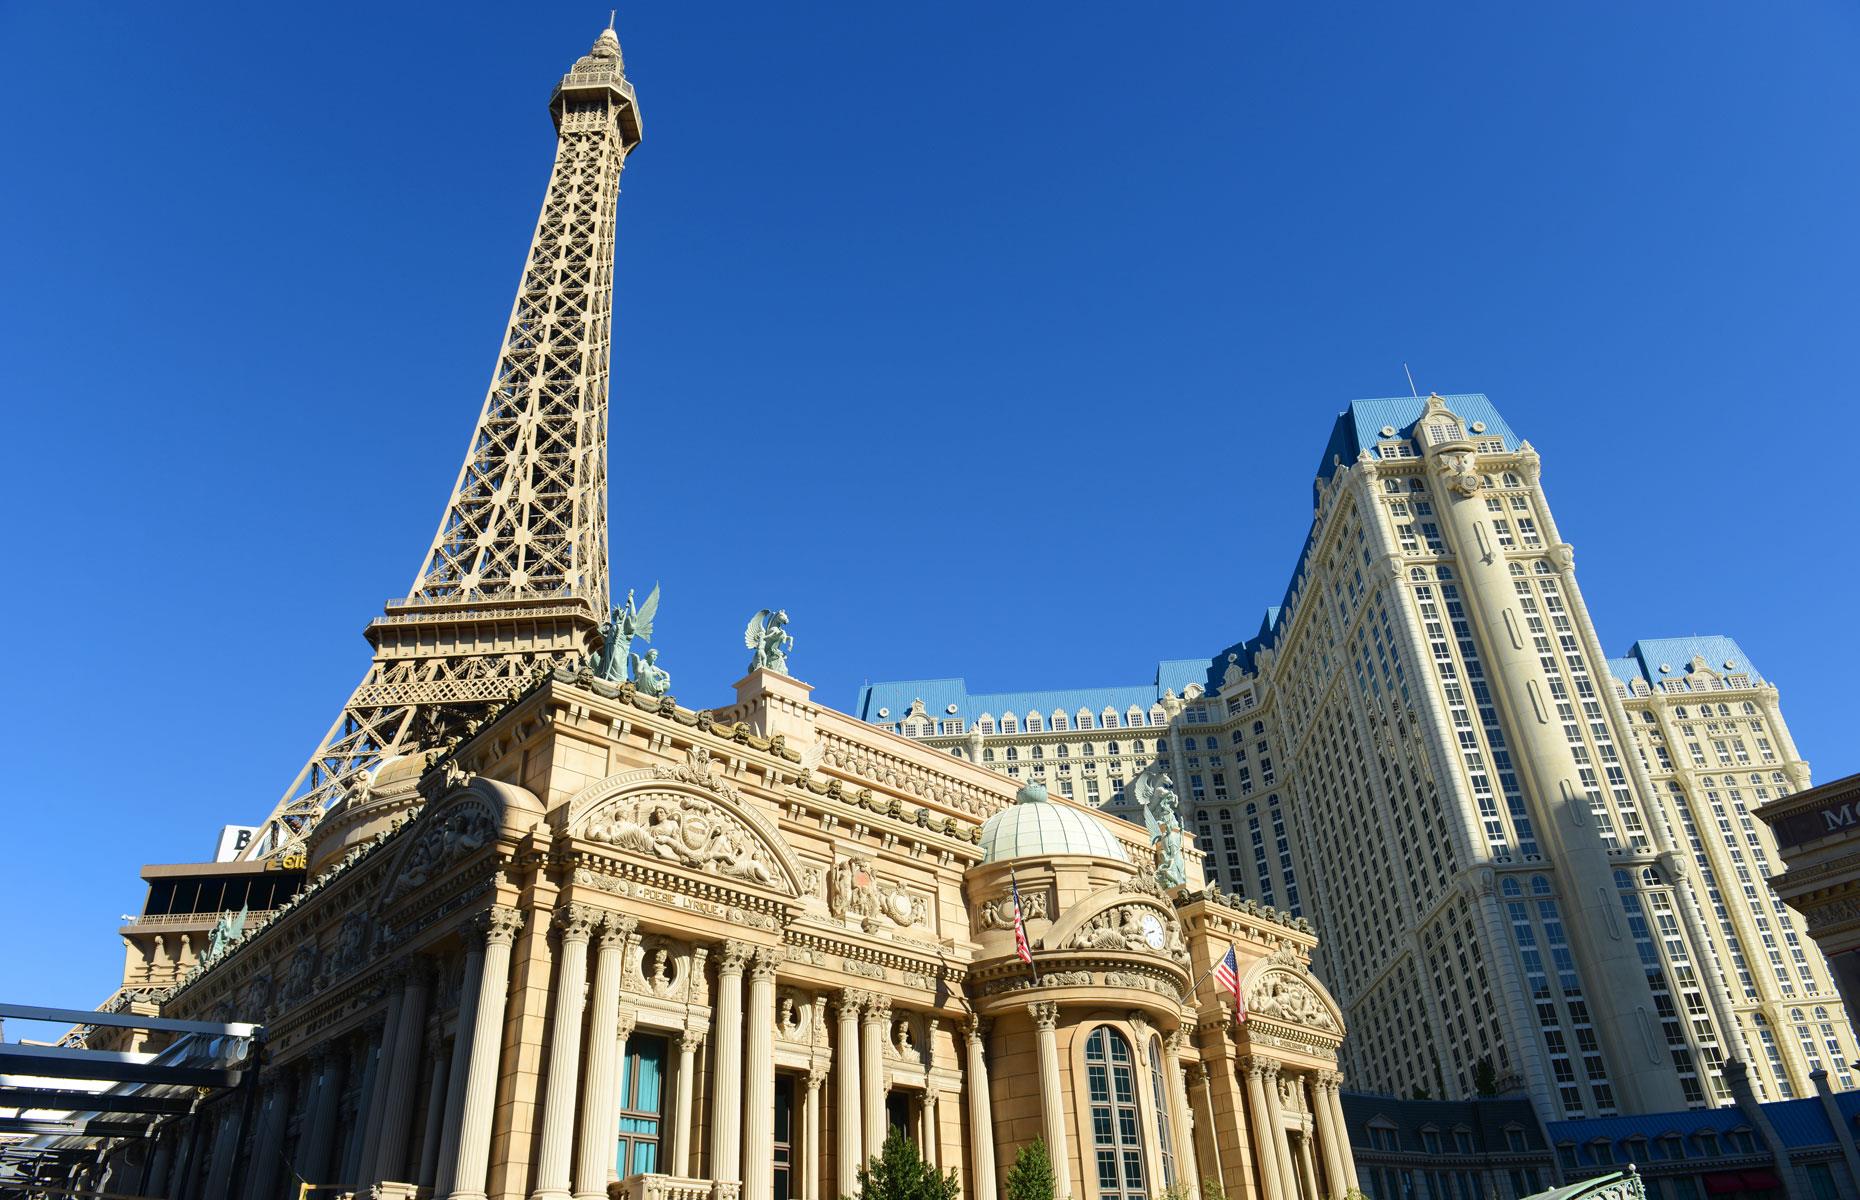 16. Paris Las Vegas: $1.4 billion